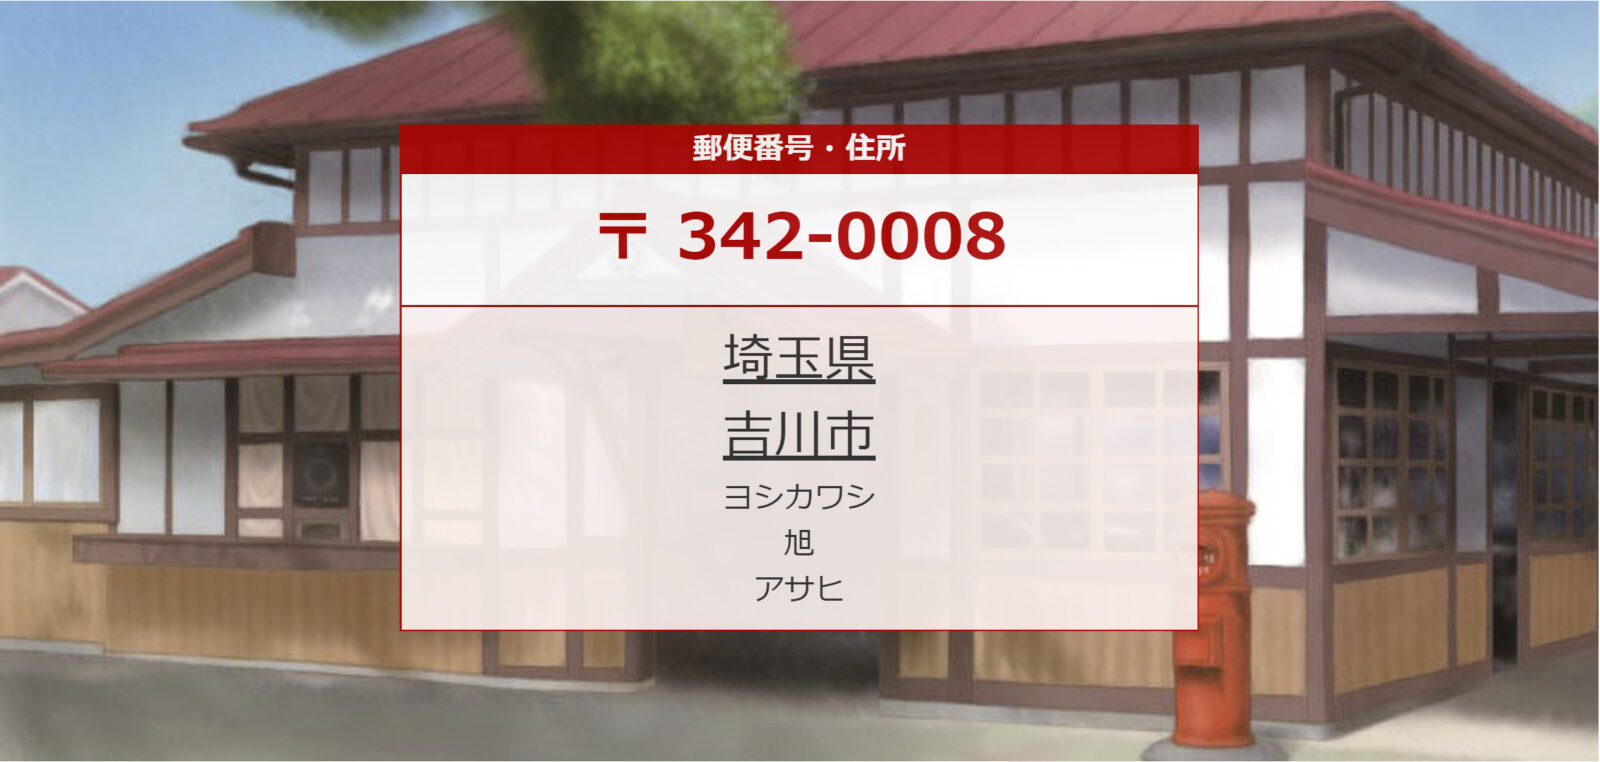 Cách tra mã bưu điện và địa chỉ ở Nhật Bản mới nhất 2022